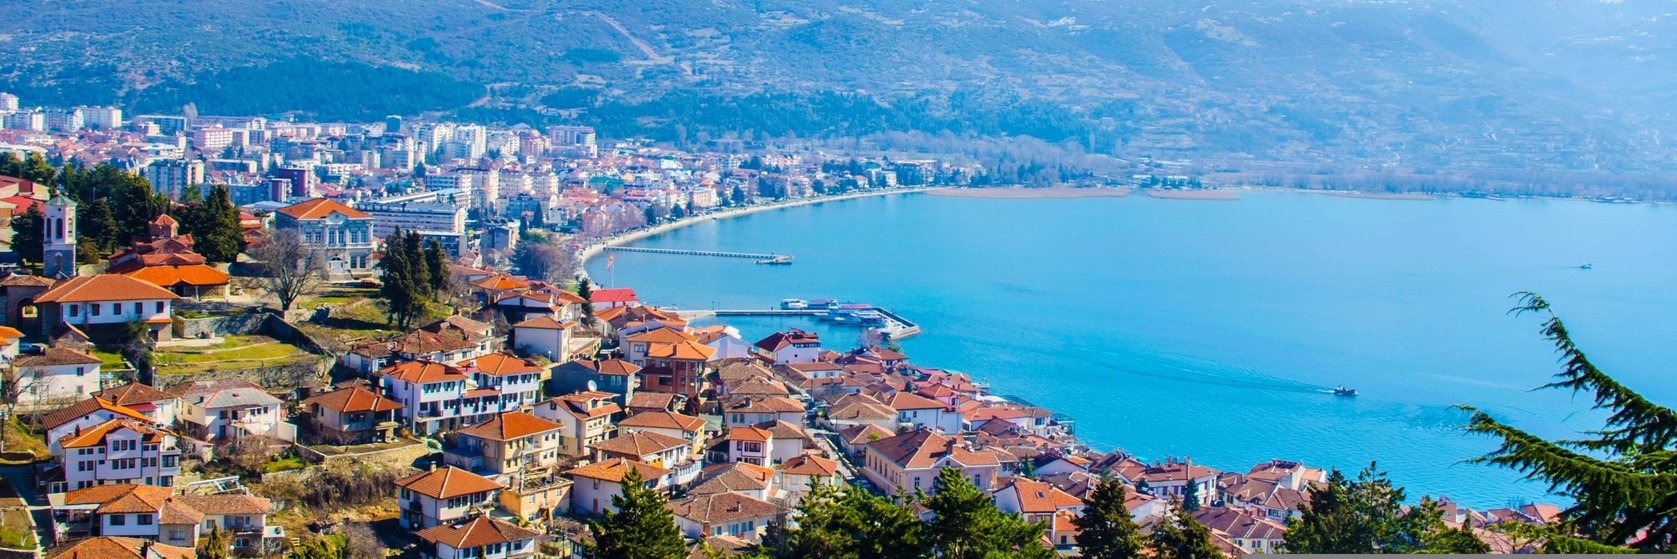 Ubytování Ohrid